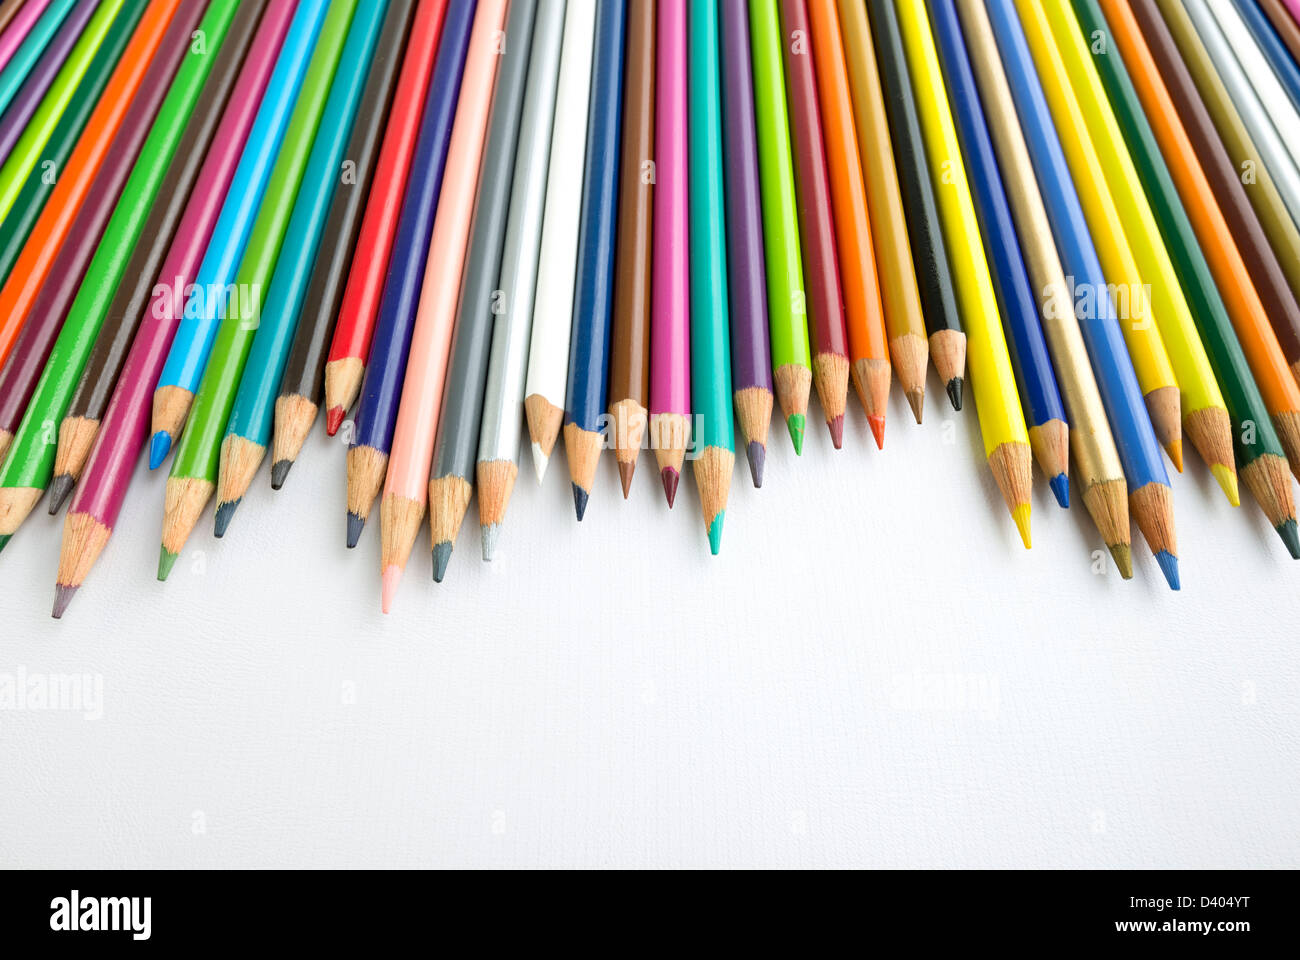 Varios lápices de colores alineados formando un gráfico. Foto de stock